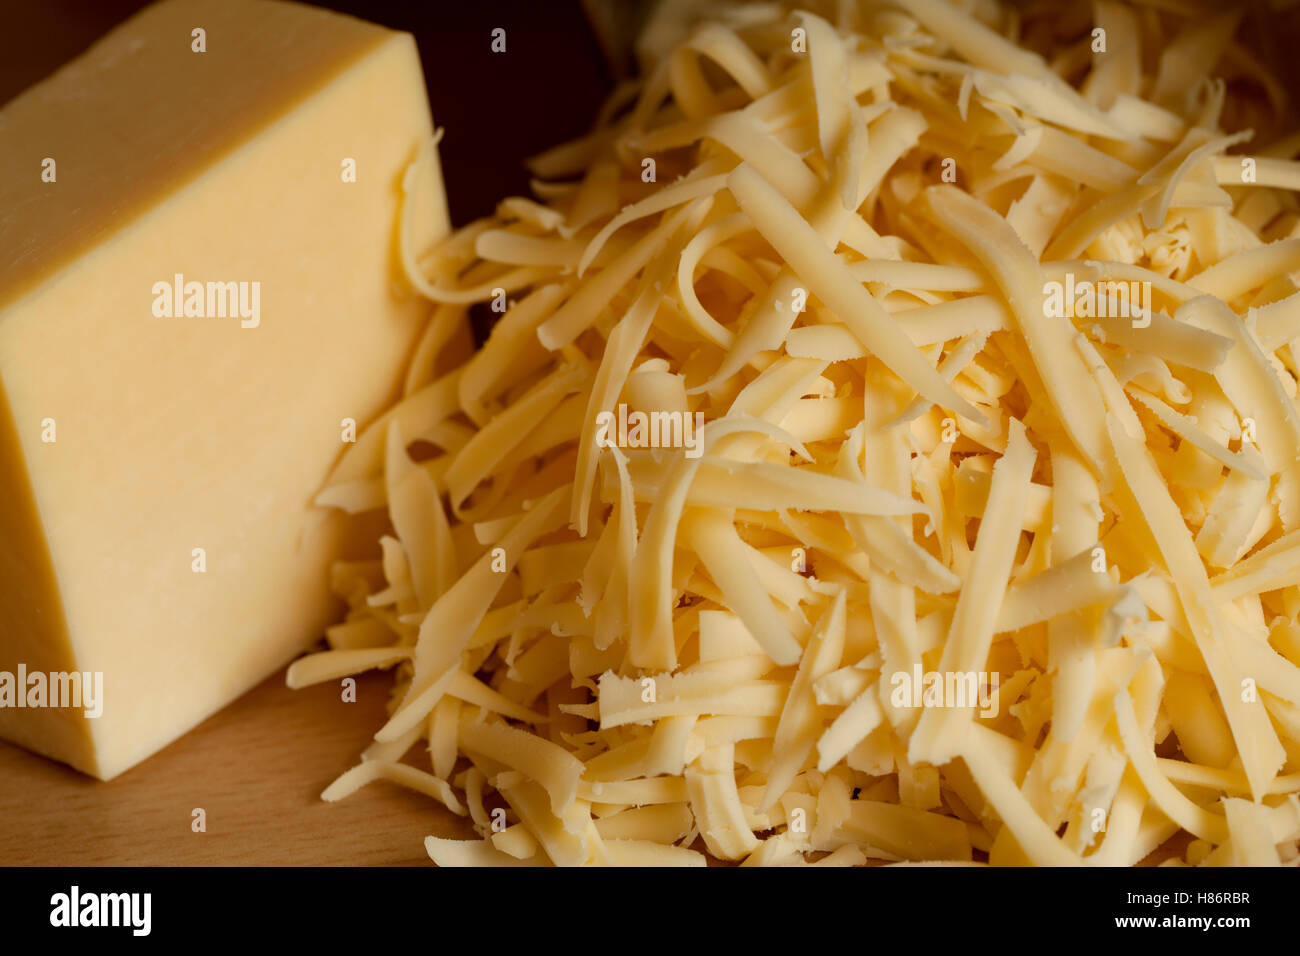 El tobillo de amarillo y queso rallado sobre parqué Foto de stock